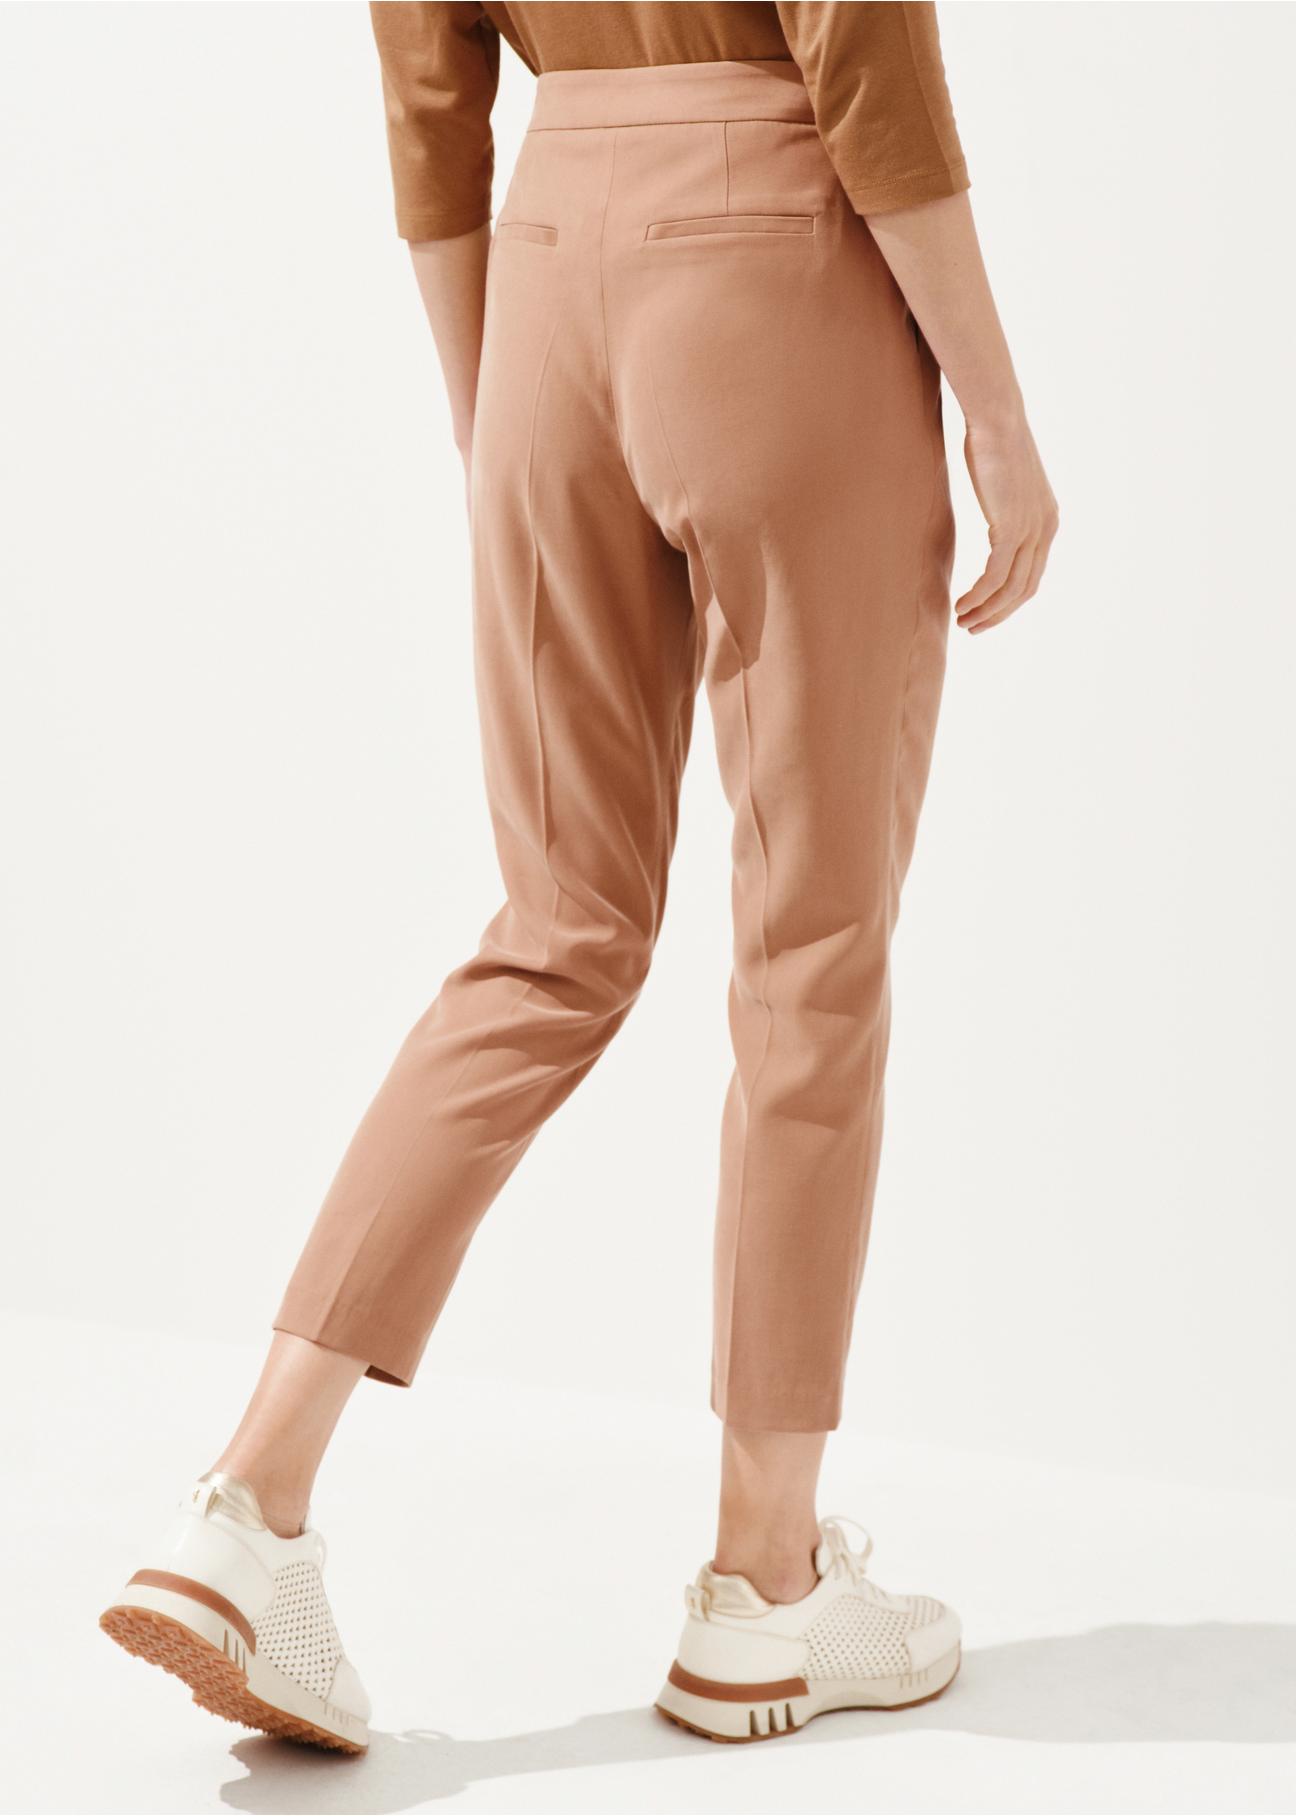 Kamelowe spodnie damskie w kant SPODT-0091-24(W24)